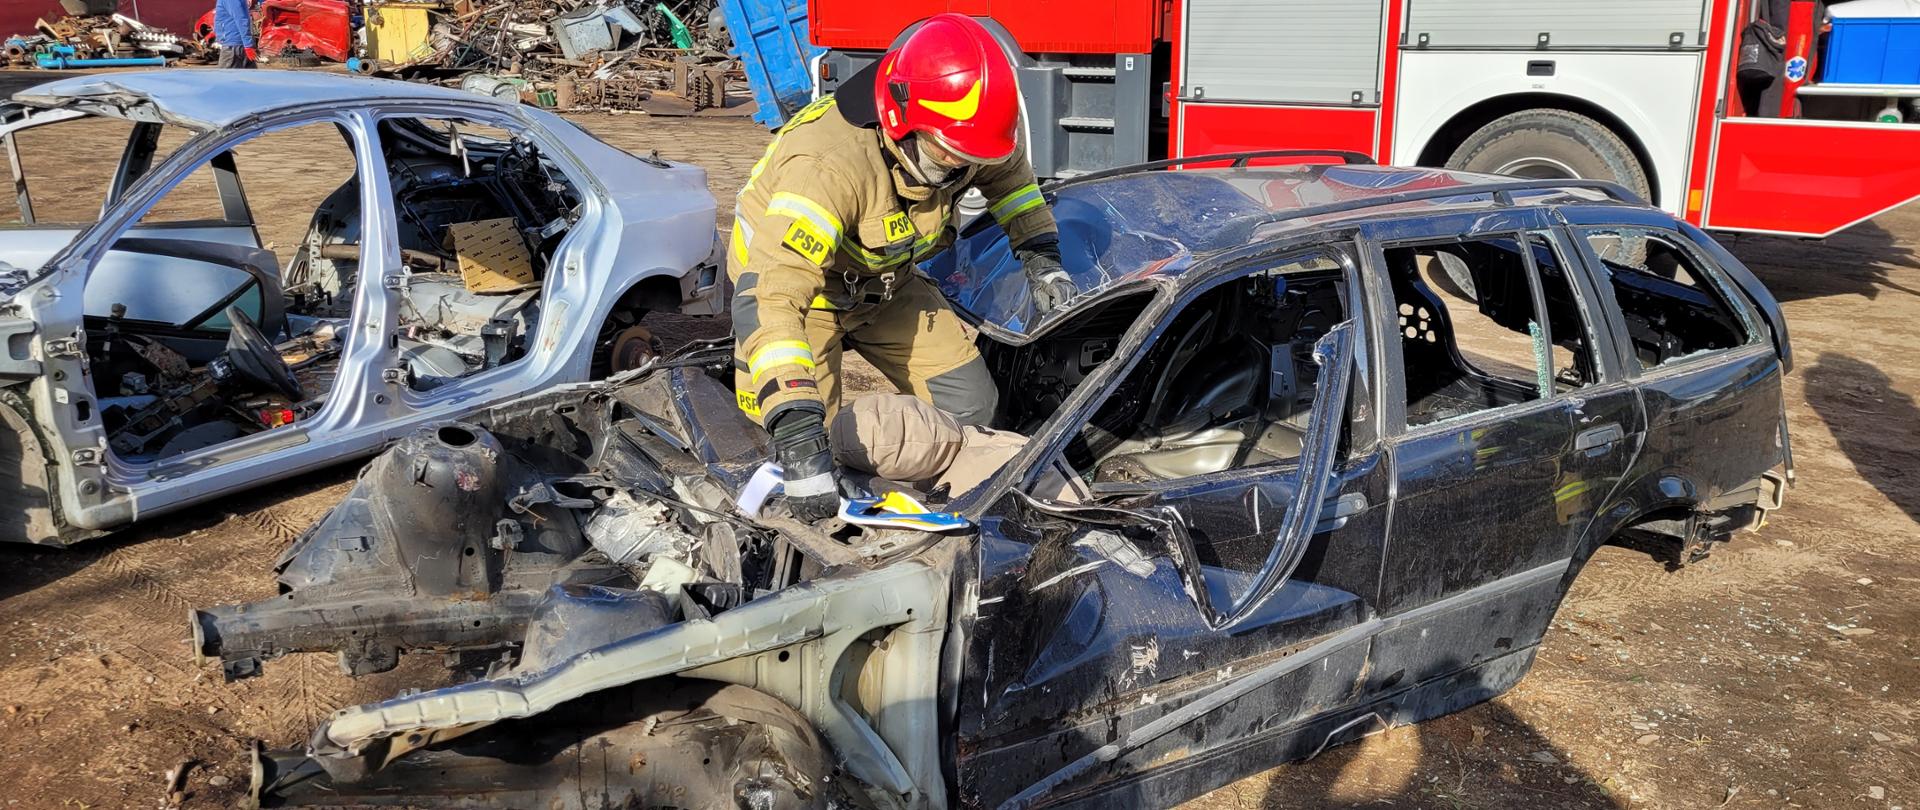 Na pierwszym planie zdjęcia widoczny jest strażak- ratownik w ubraniu specjalnym oraz czerwonym hełmie. Strażak dostaje się do wraku pojazdu przez otwór po przedniej szybie auta. W prawym ręku trzyma kołnierz ortopedyczny dla poszkodowanego, w środku pojazdu znajduje się manekin imitujący osobę poszkodowaną. W tle widać czerwony wóz strażacki z otwartą jedną skrytką sprzętową. Po lewej stronie zdjęcia widać składowisko złomu.